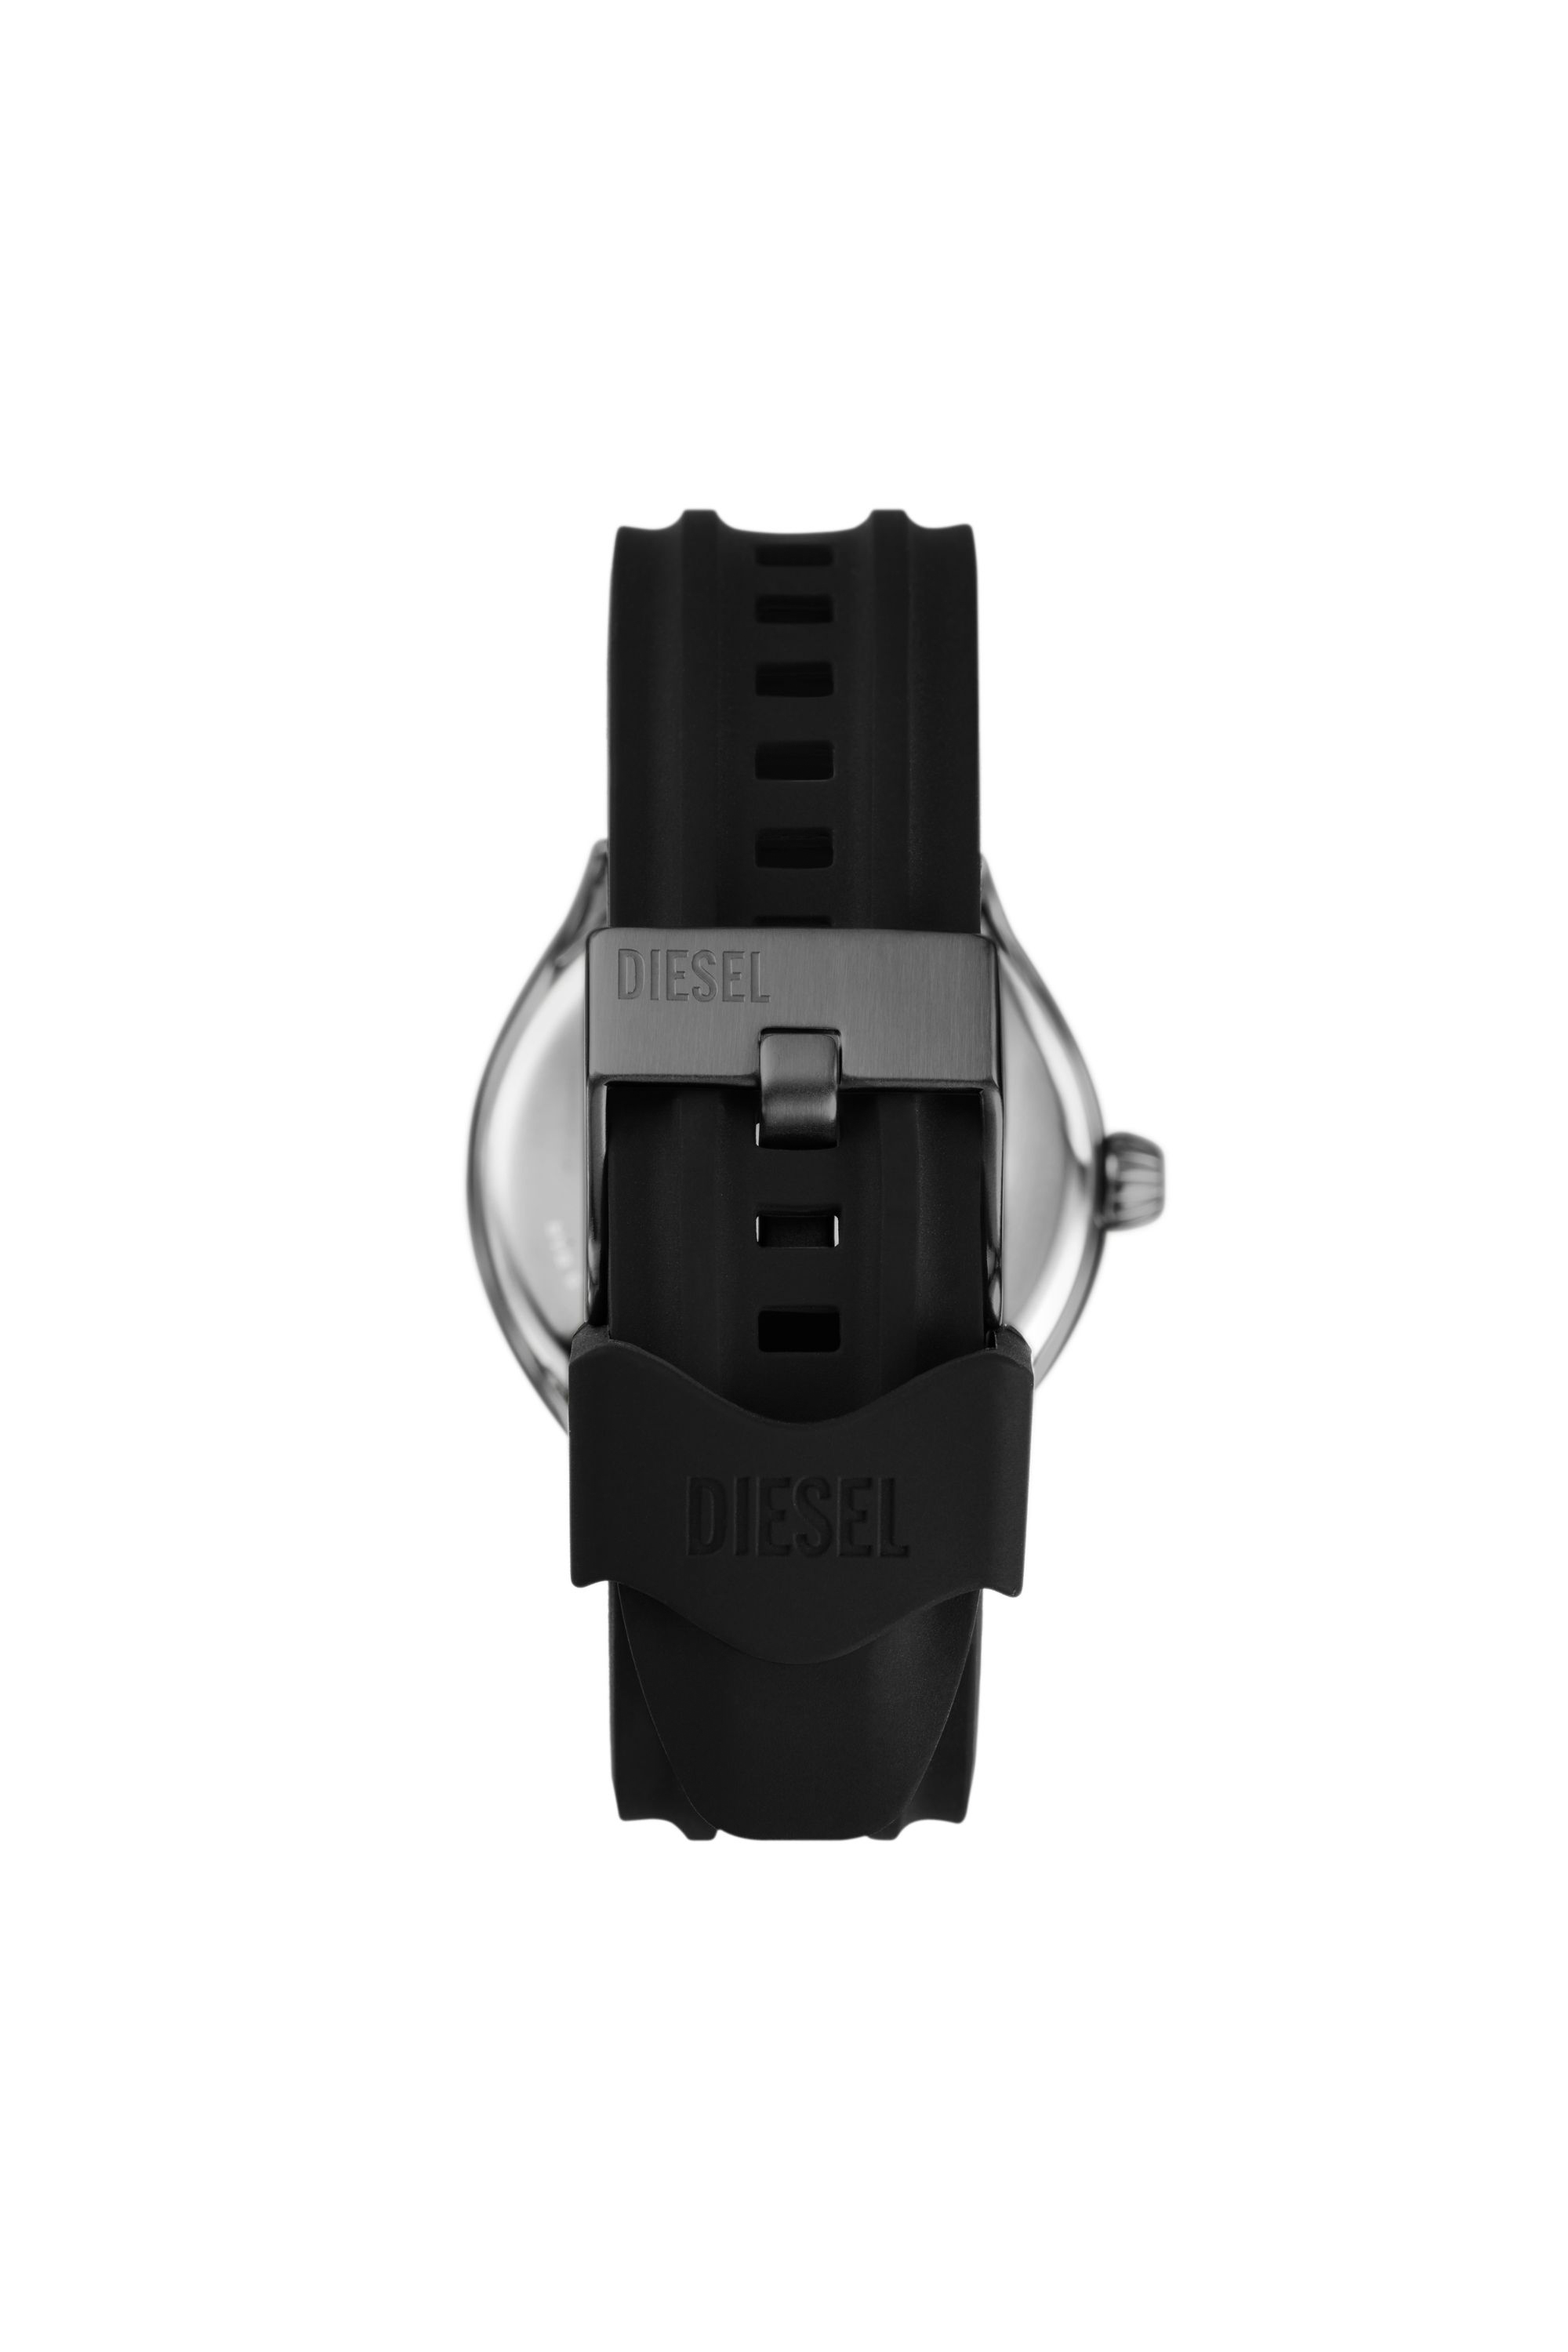 Diesel - DZ2201, Male Streamline three-hand black silicone watch in ブラック - Image 2